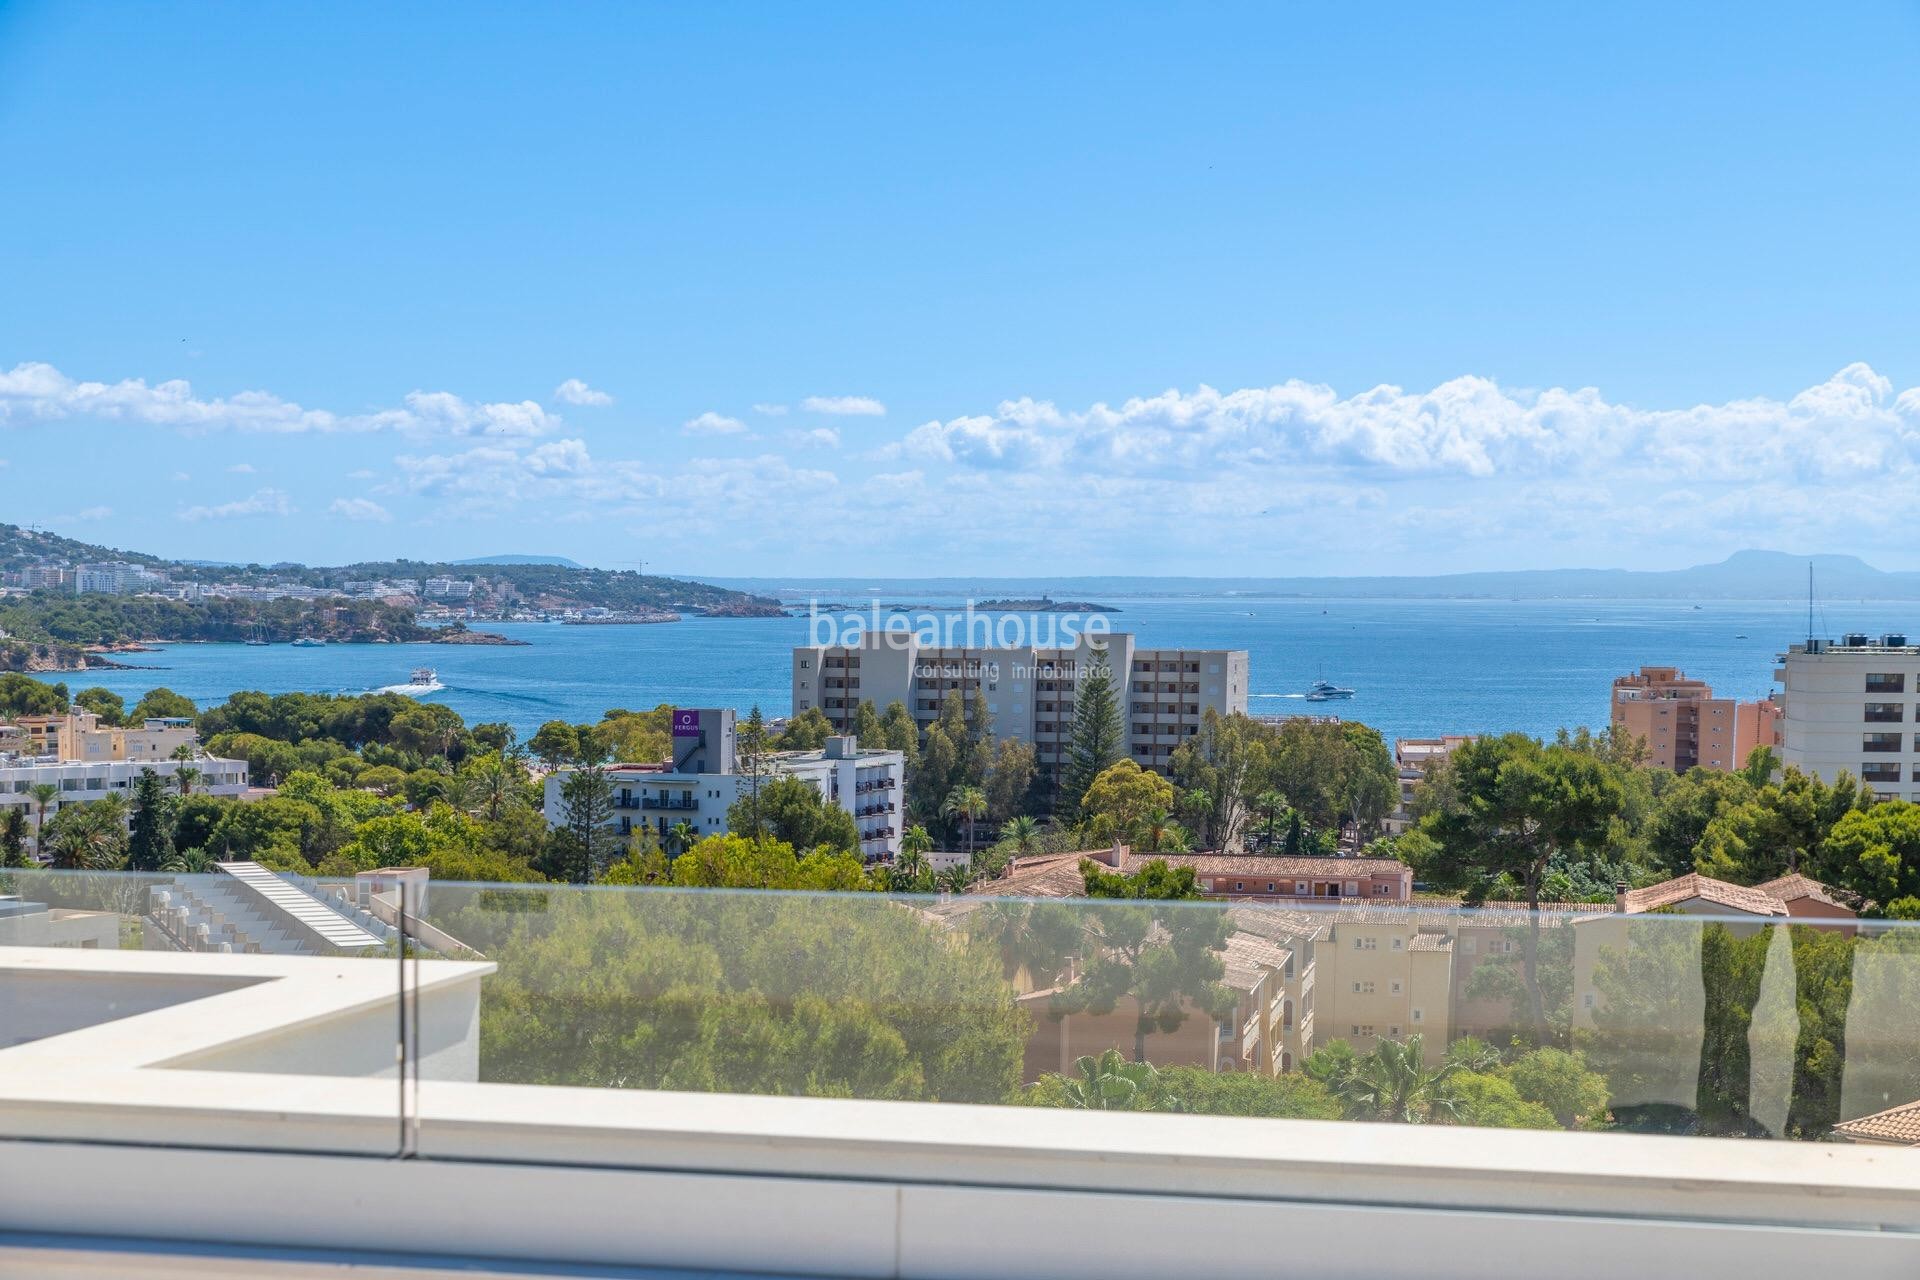 Magnífica villa nueva con vistas al mar en Palmanova, con un diseño moderno, terrazas y jardines